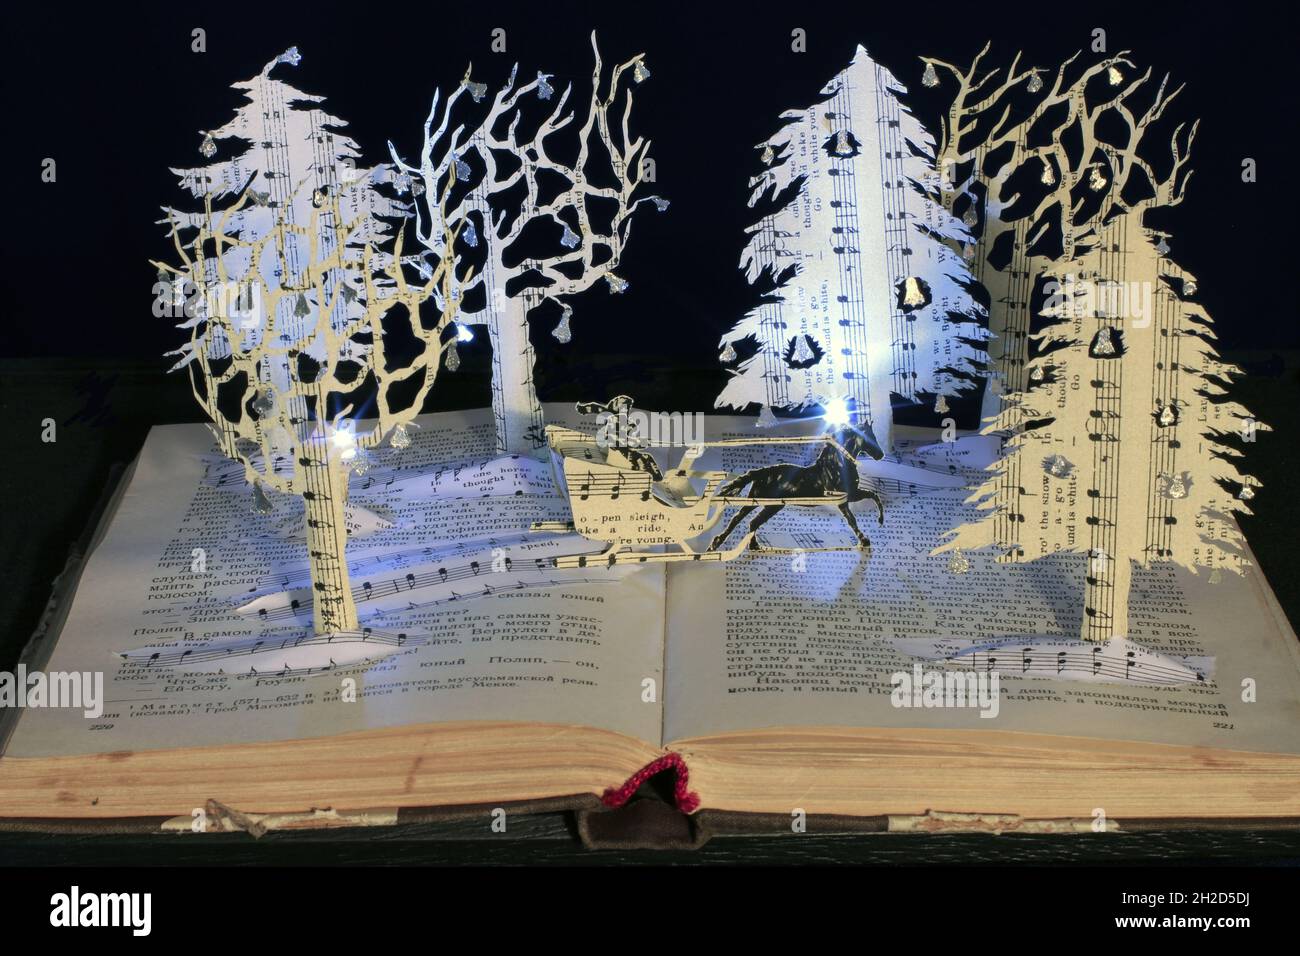 Interprétation papier faite à la main de Jingle Bells comme une scène de sculpture de livre.Un traîneau traverse un merveilleux pays hivernal magique. Banque D'Images